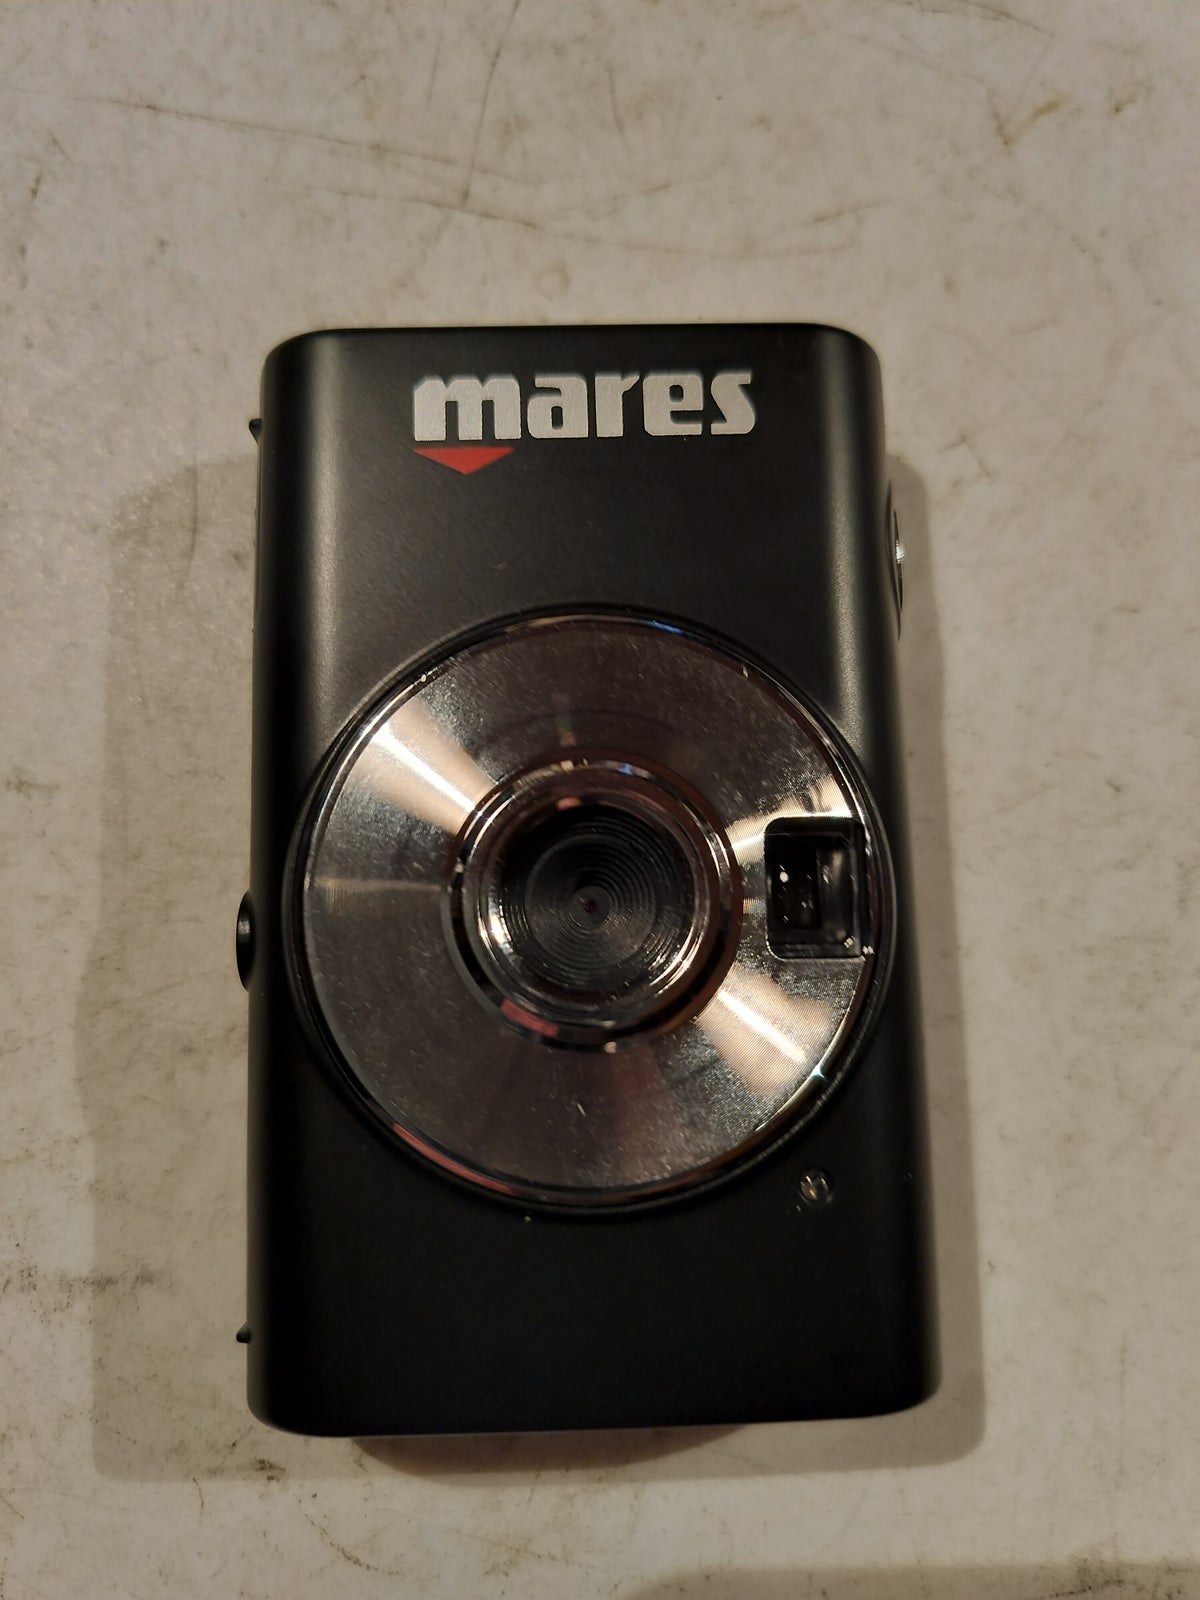 Andet, Mares, 1.3 megapixels